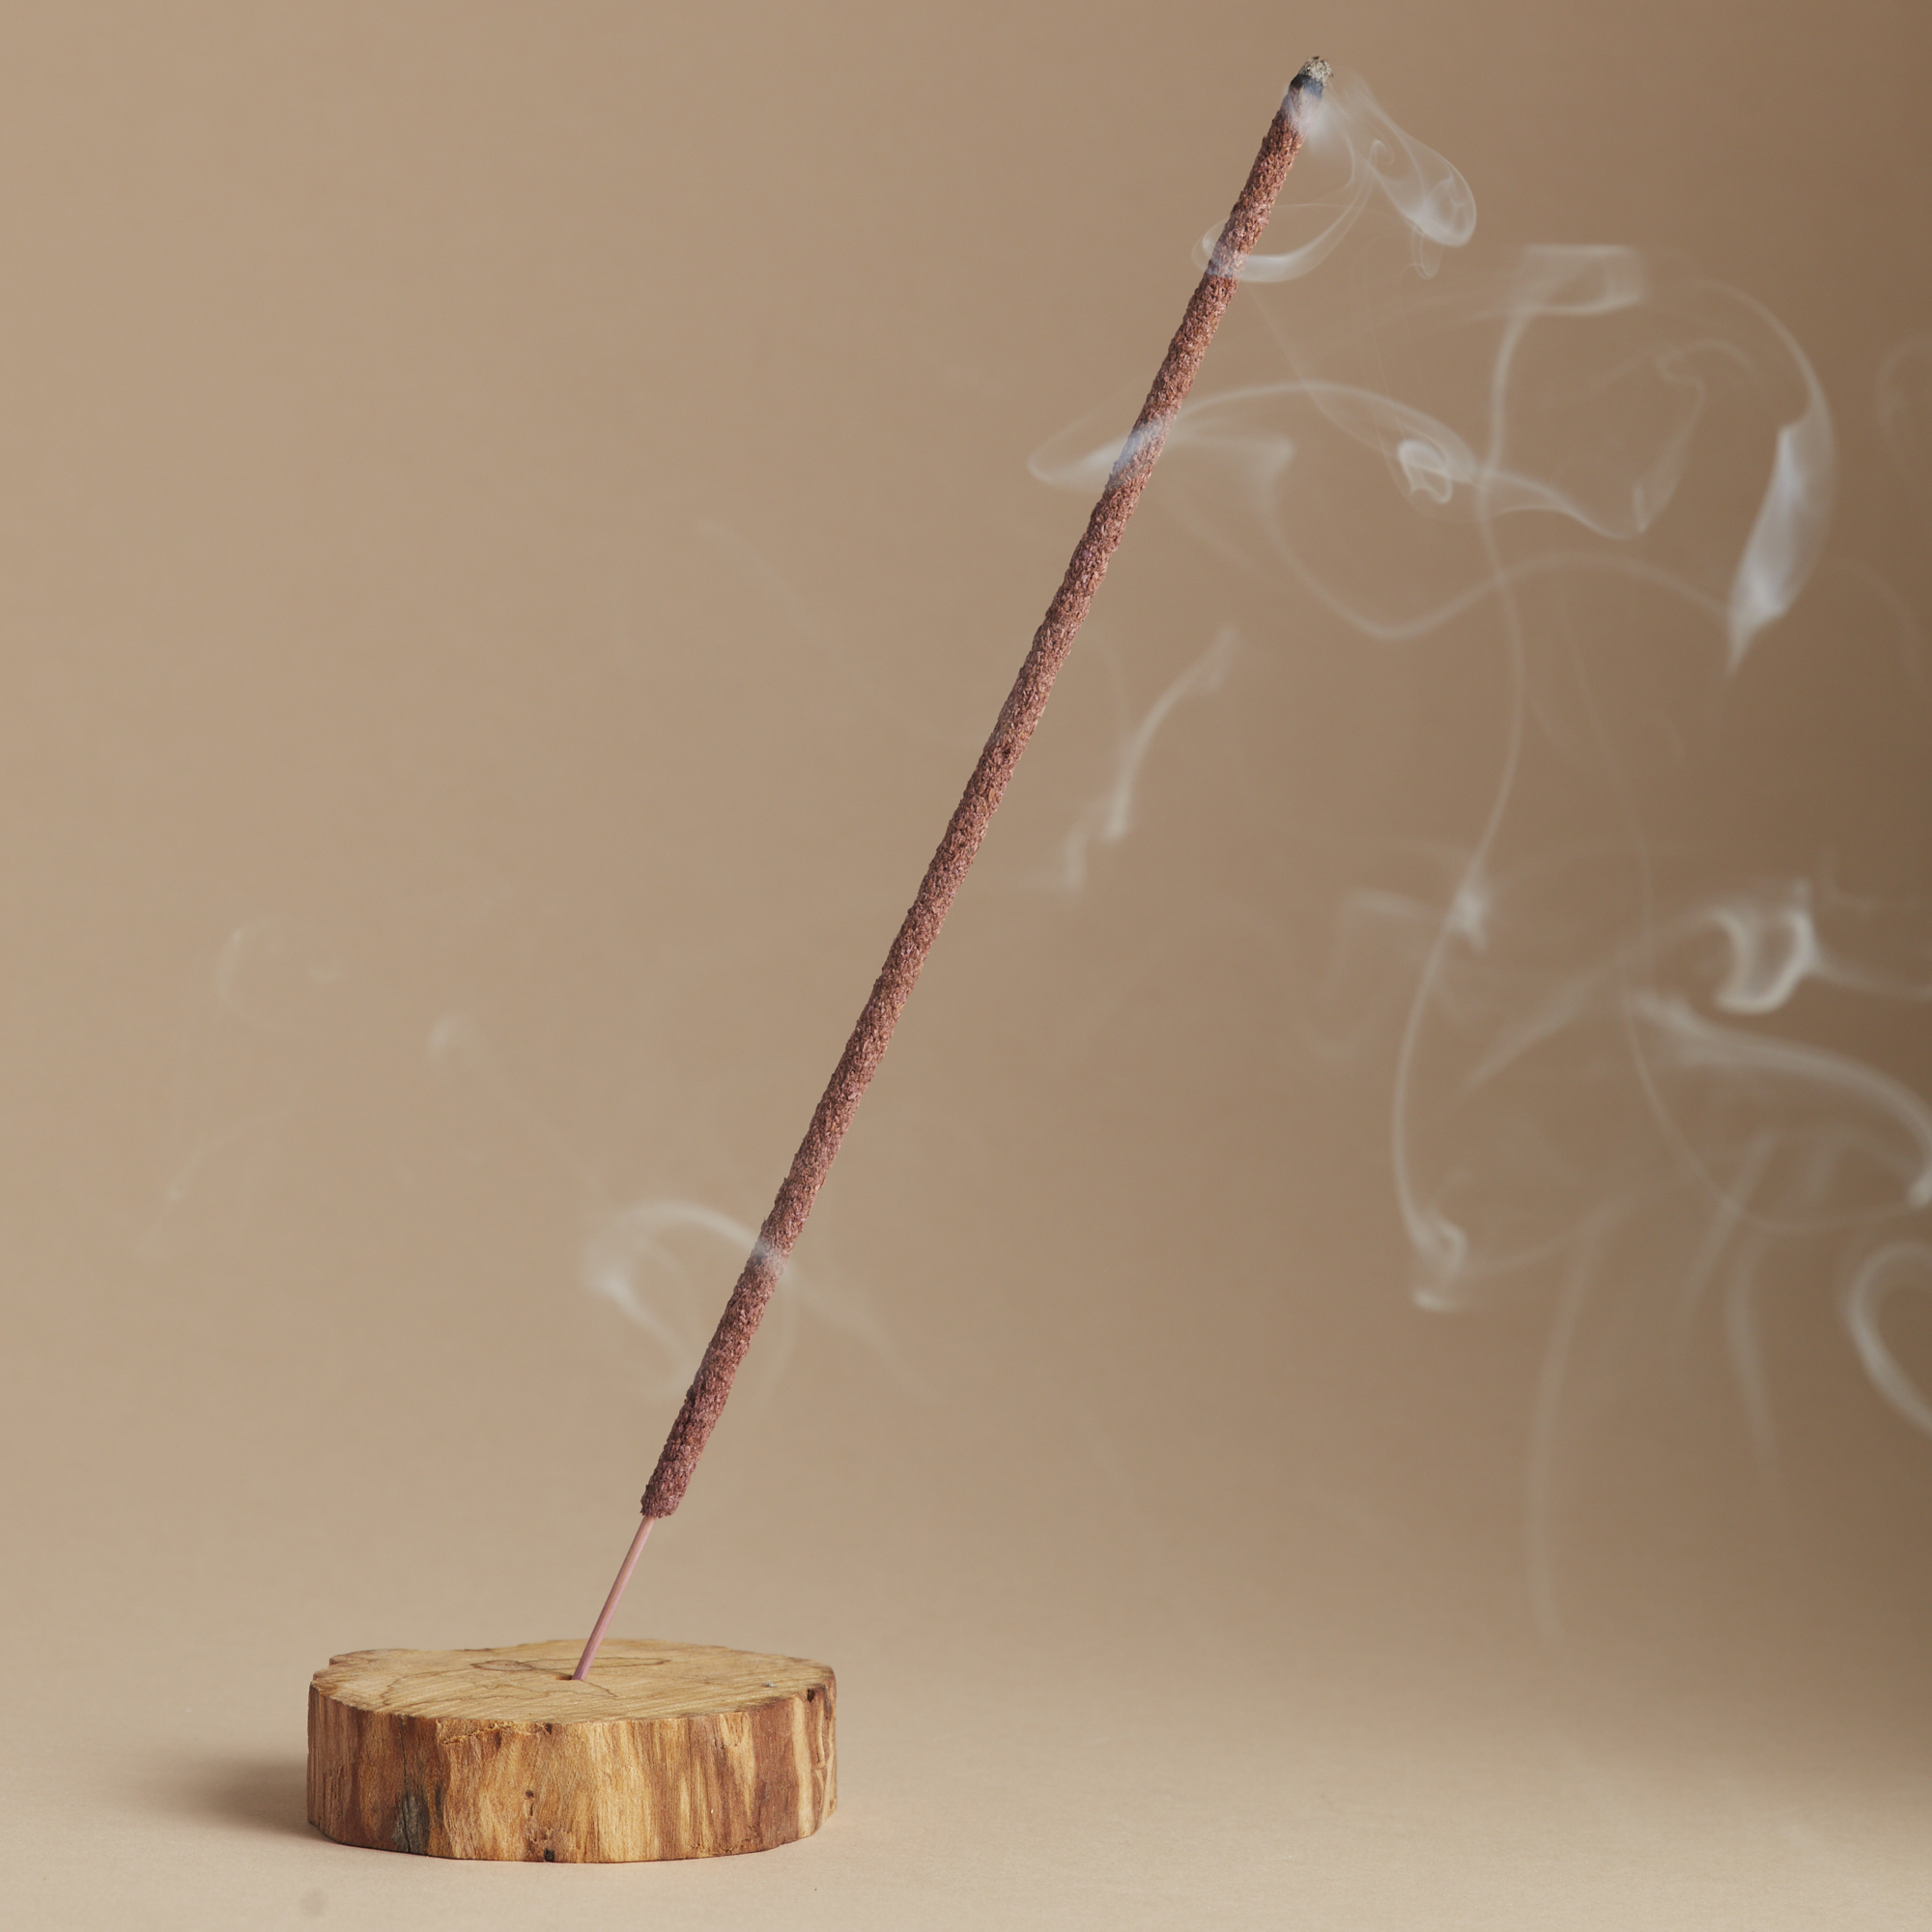 Палочка благовоний с дымом на подставке из дерева пало санто